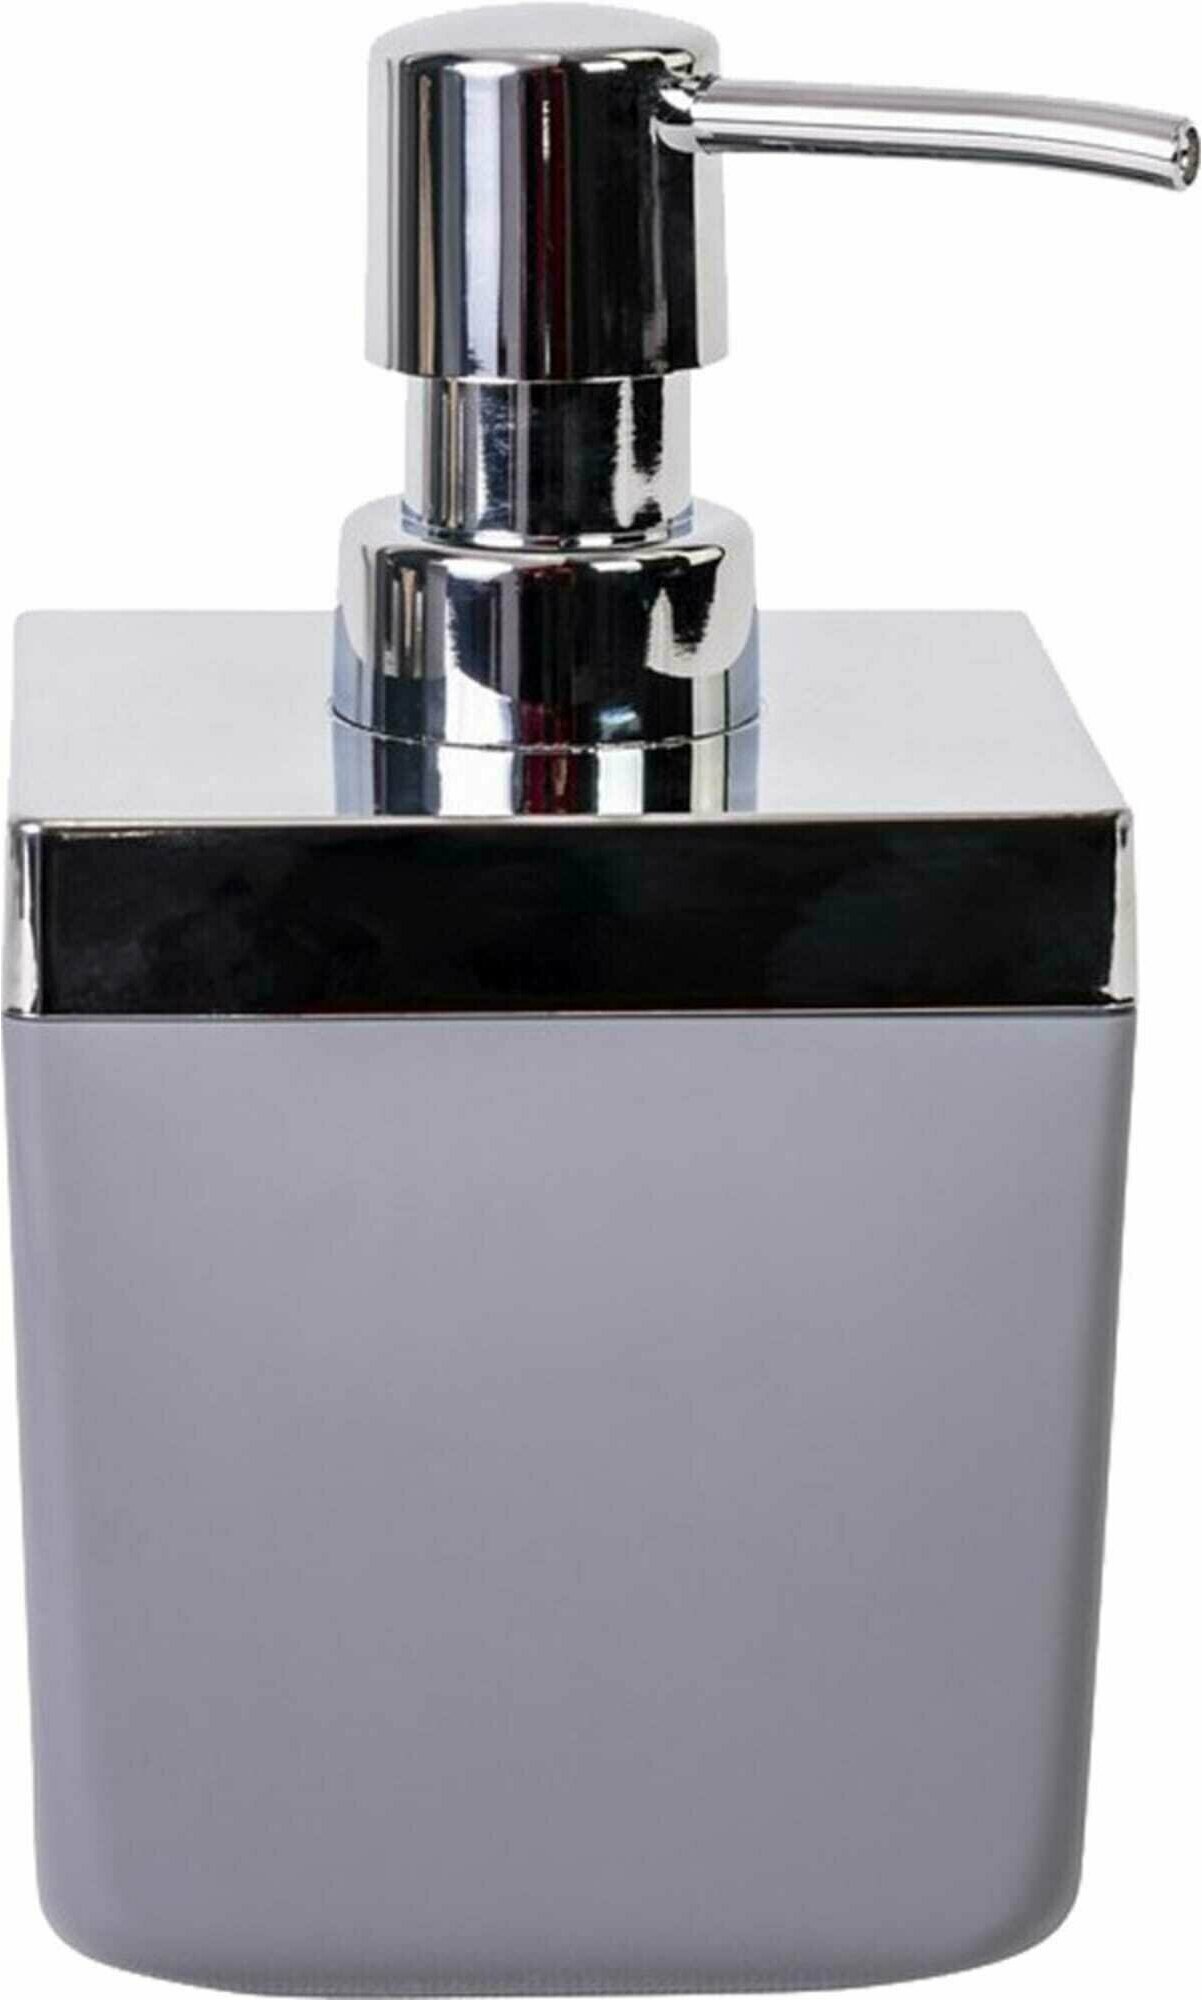 Дозатор для жидкого мыла Primanova M-SA01-07 TOSKANA, цвет серый, материал пластик, настольный, объем 250 мл, размер 8,5x8,5x14,5 см